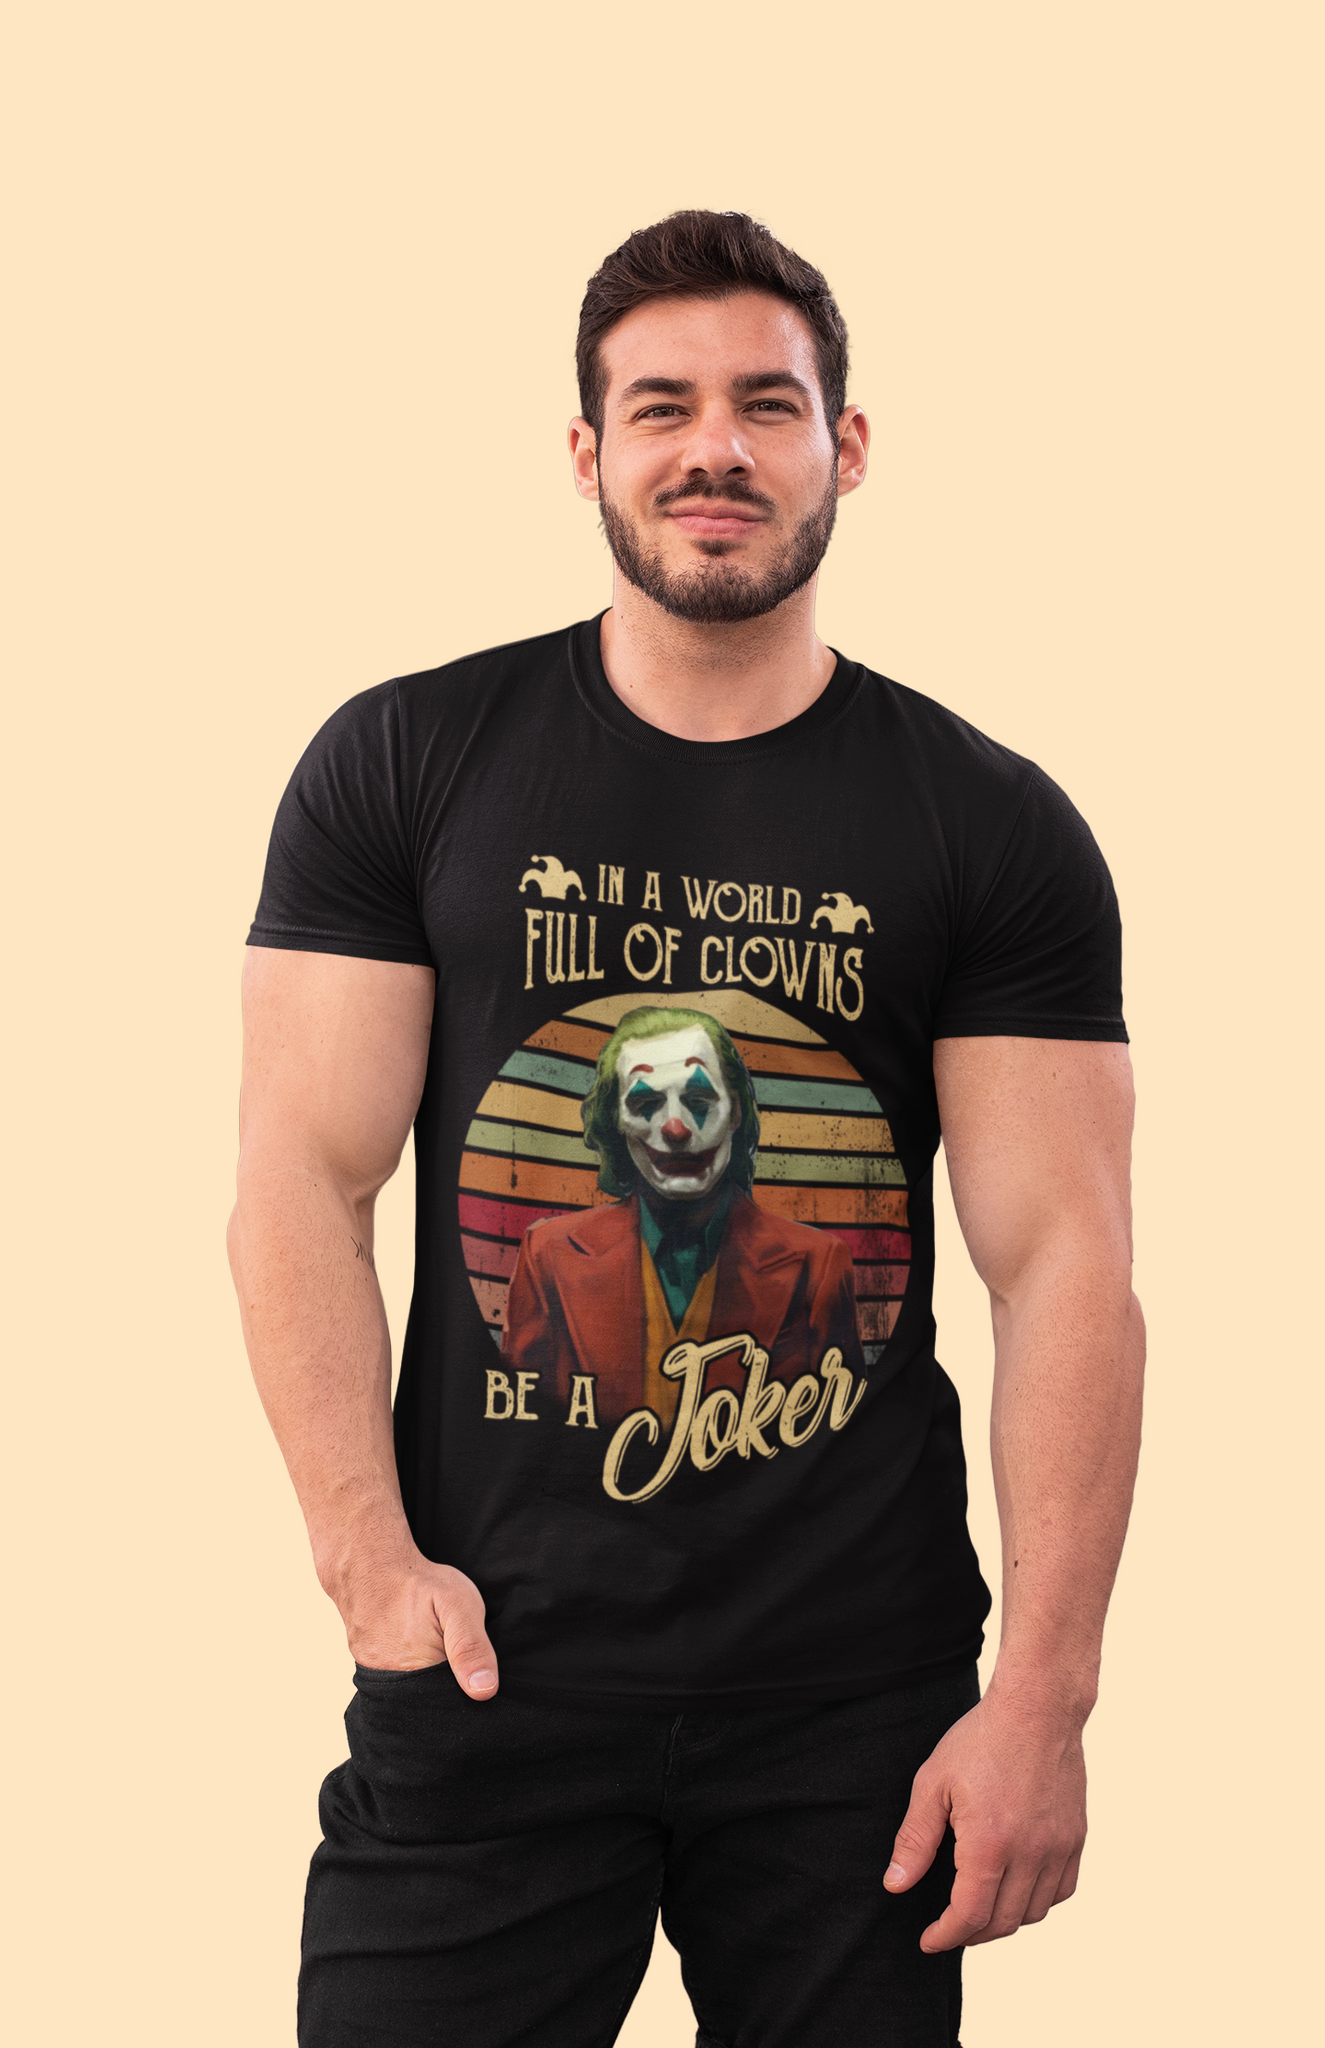 Joker Vintage T Shirt, Joker The Comedian T Shirt, In A World Full Of Clowns Be A Joker Tshirt, Halloween Gifts